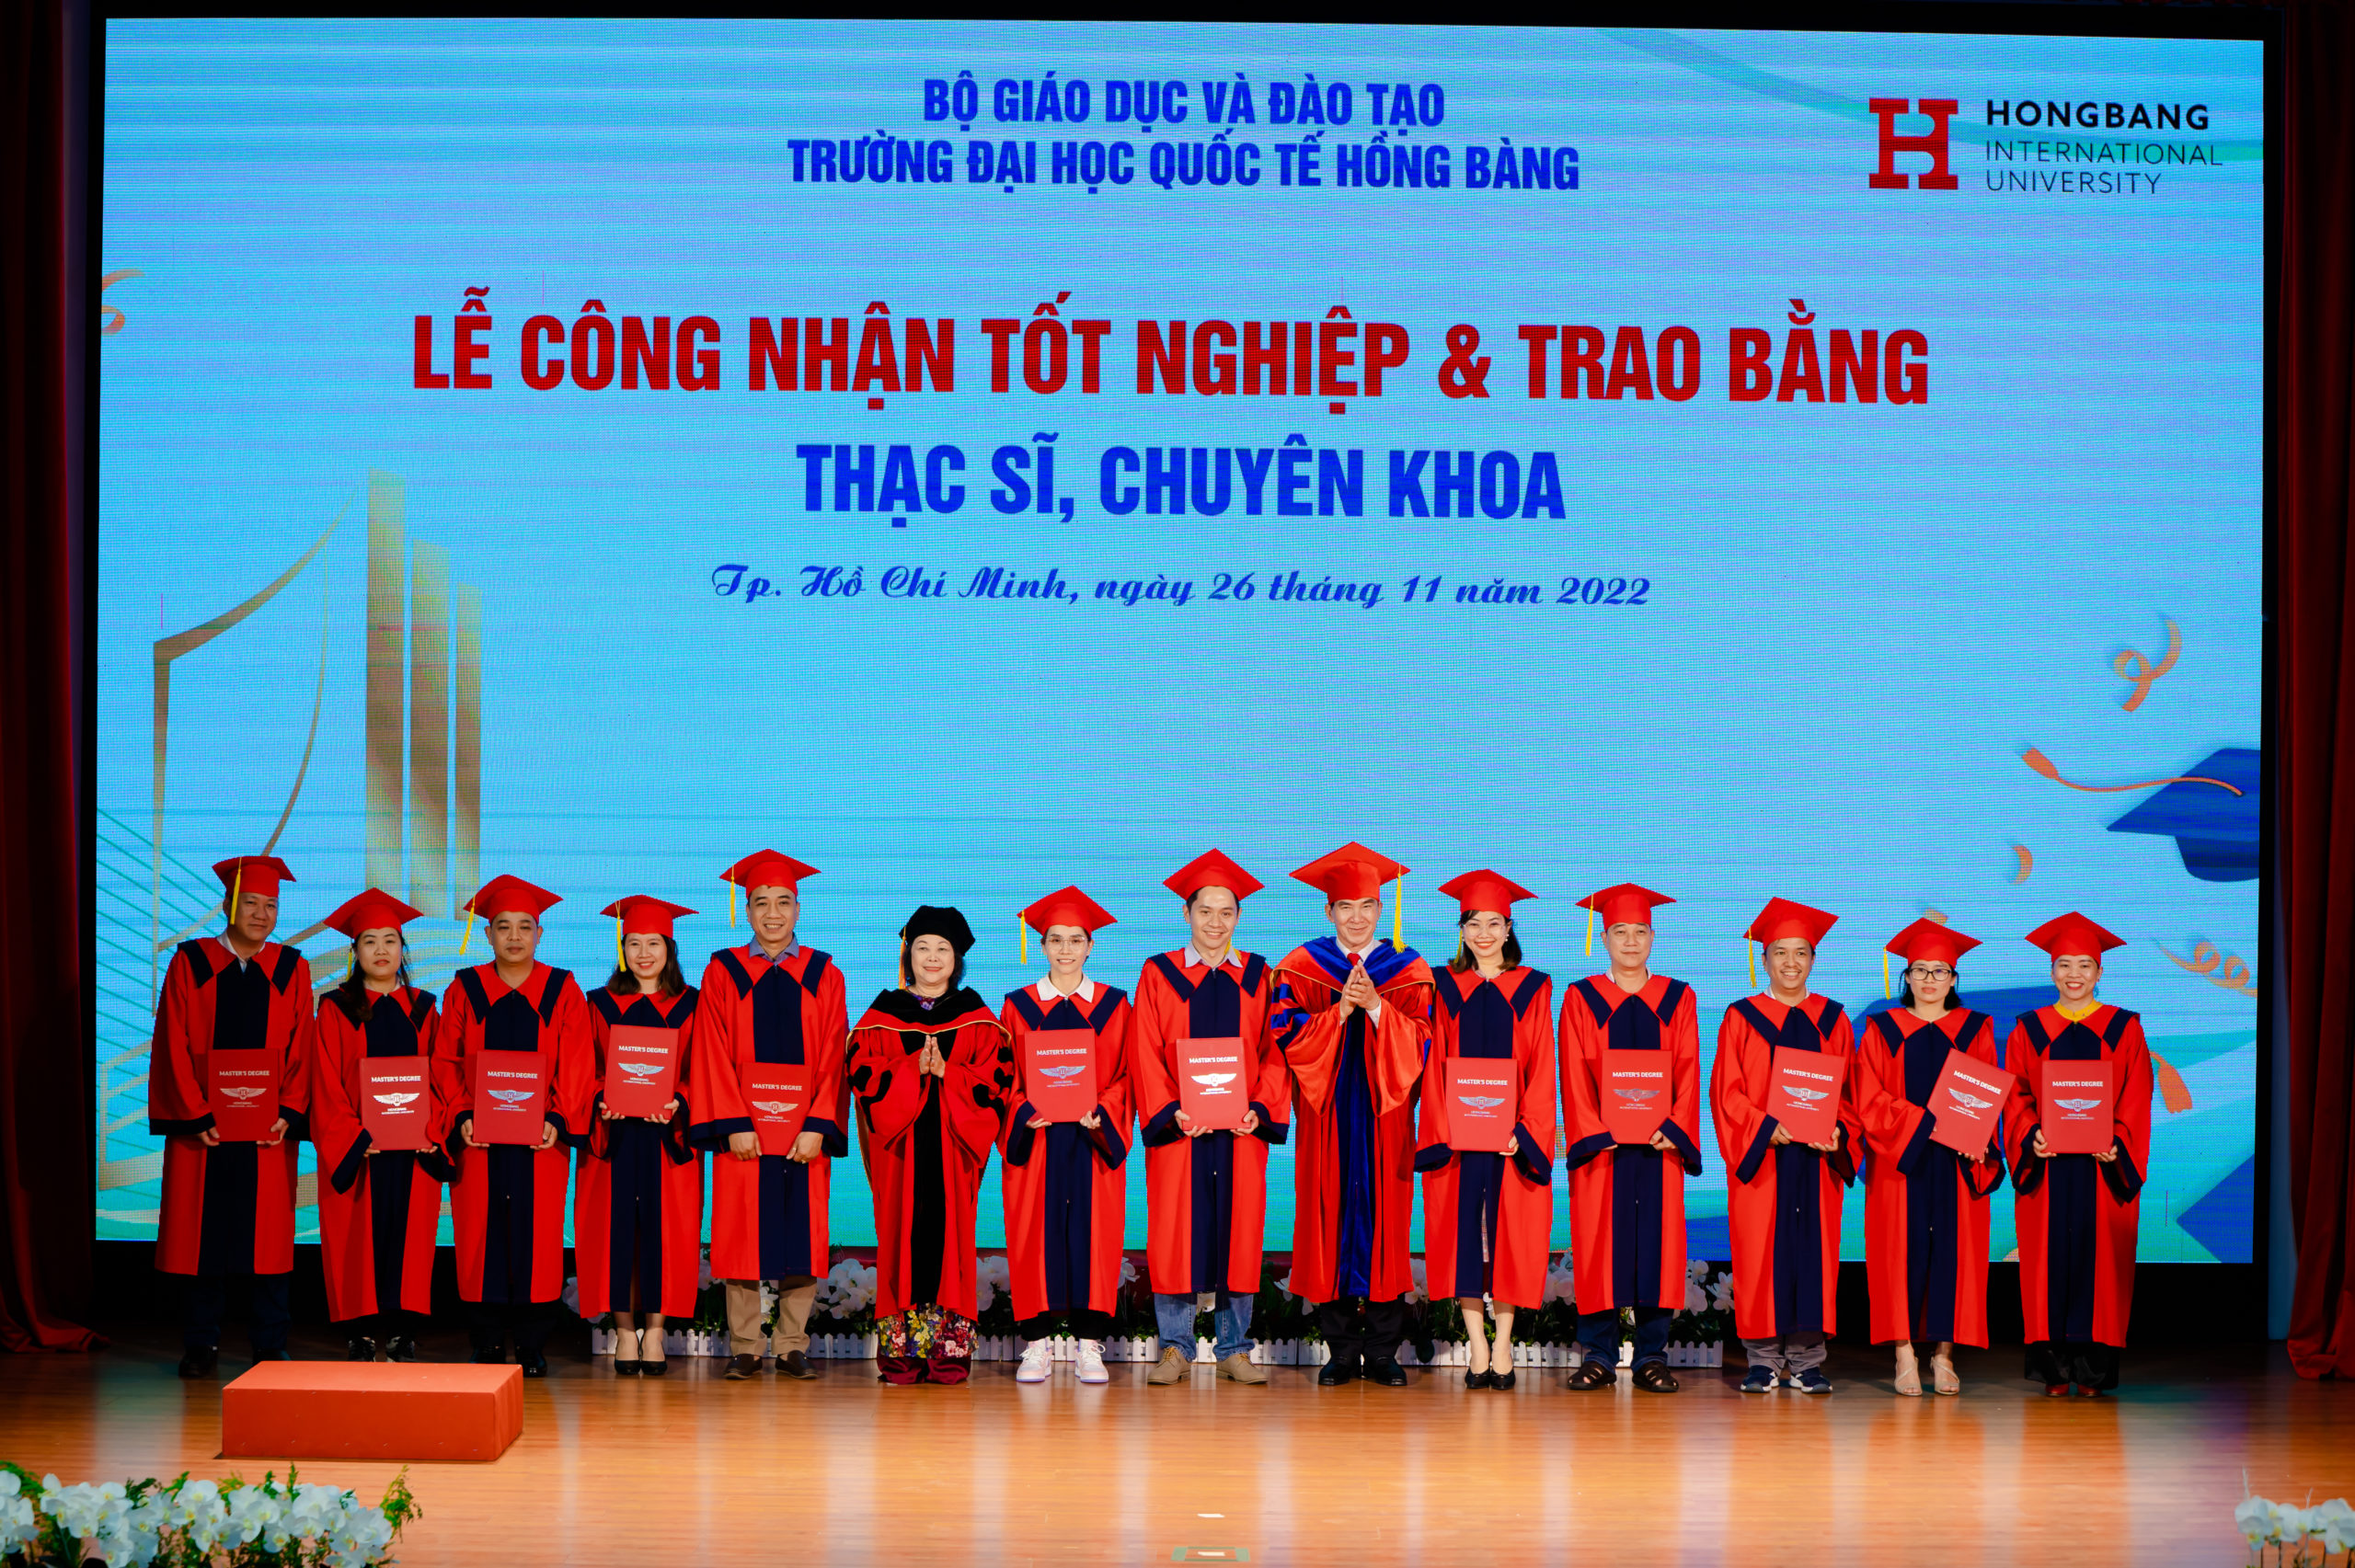 Đại học Quốc tế Hồng Bàng vinh danh 362 Thạc sĩ, Chuyên khoa tốt nghiệp năm 2022